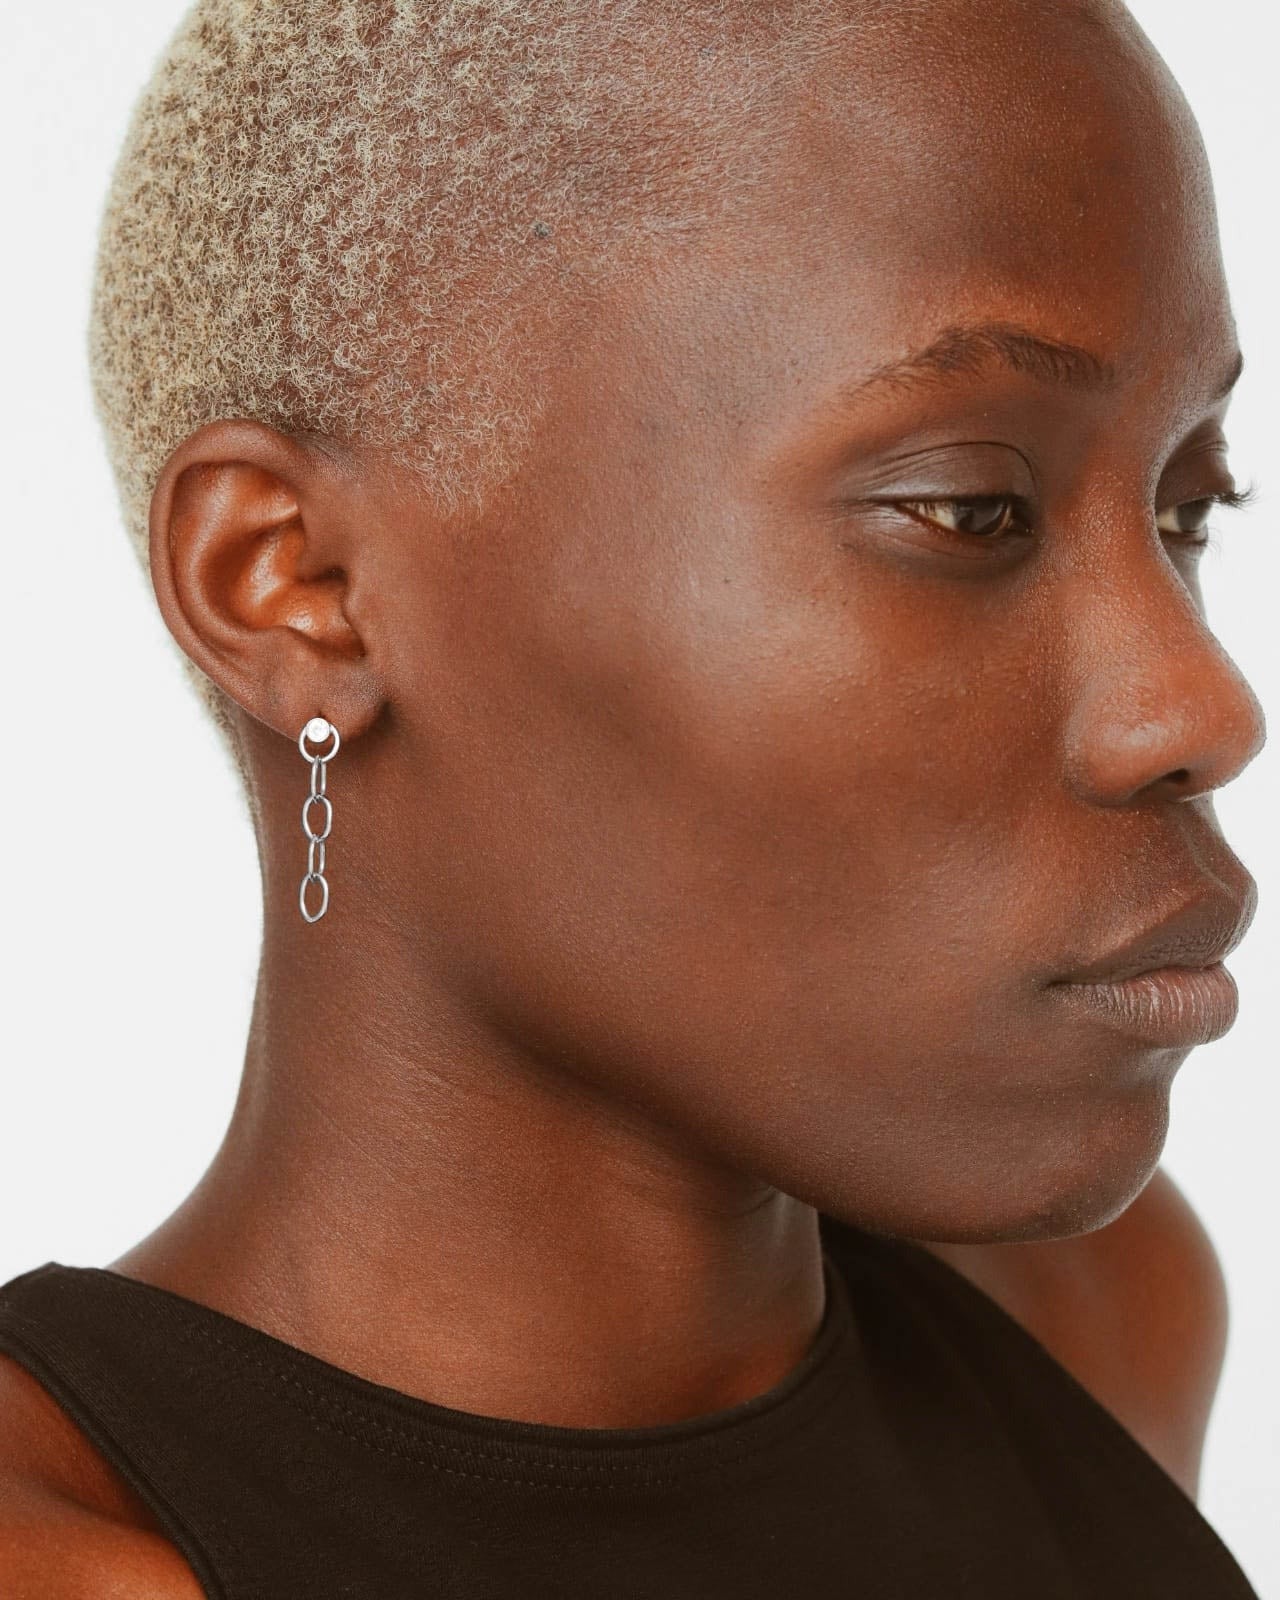 925 Silver - Chain Earrings